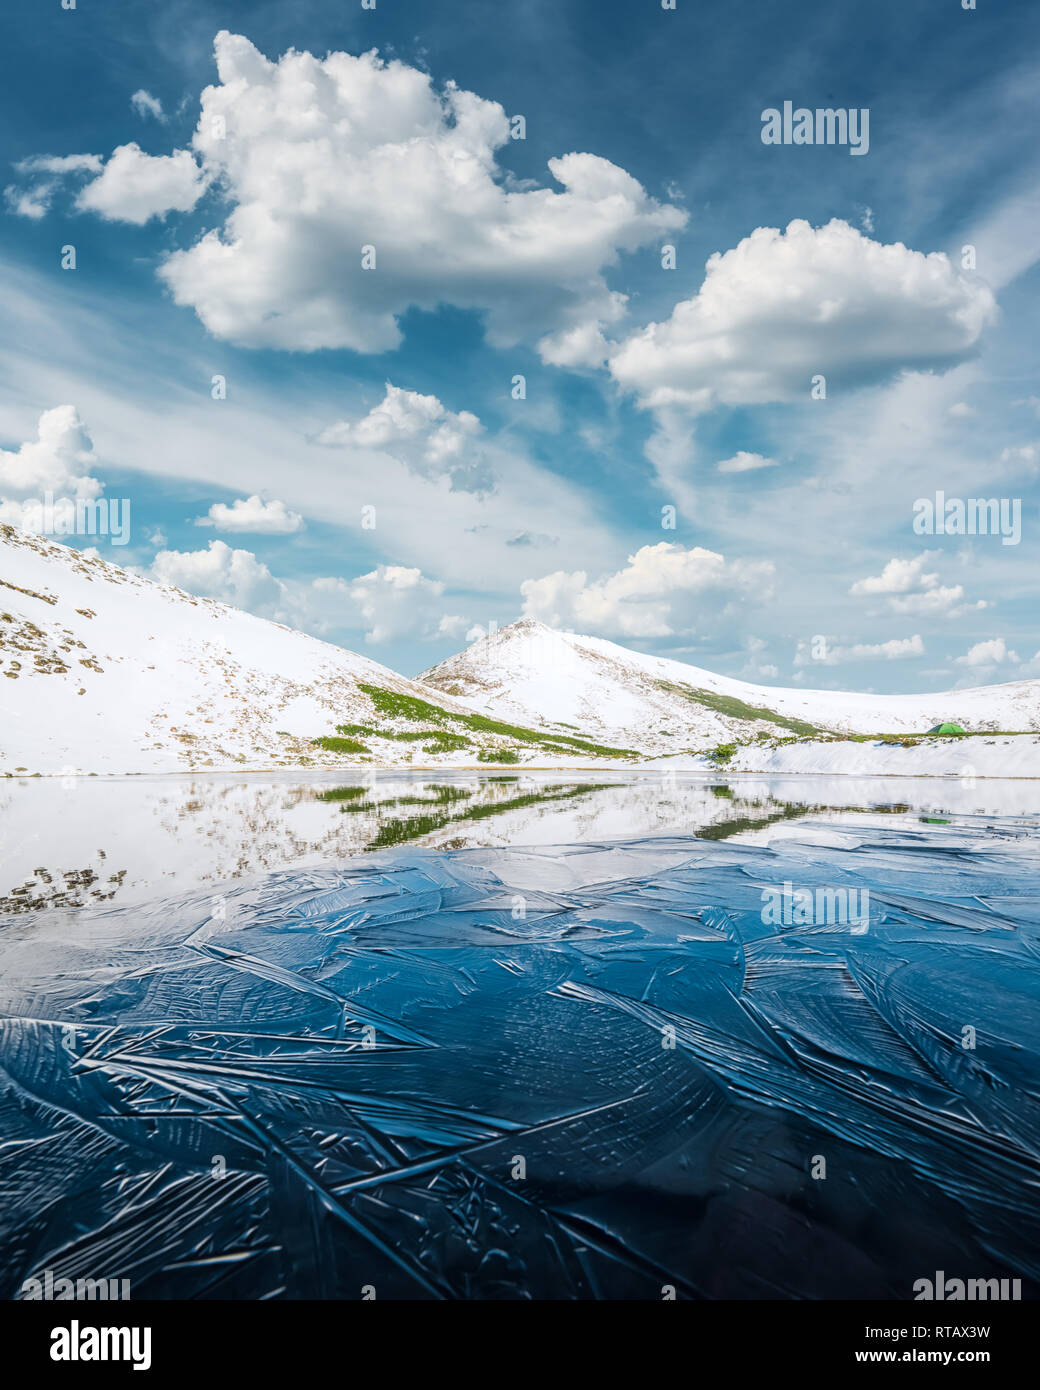 Congelati lago di montagna con il blu ghiaccio e crepe sulla superficie. Il pittoresco paesaggio invernale con colline innevate sotto un azzurro cielo nuvoloso Foto Stock